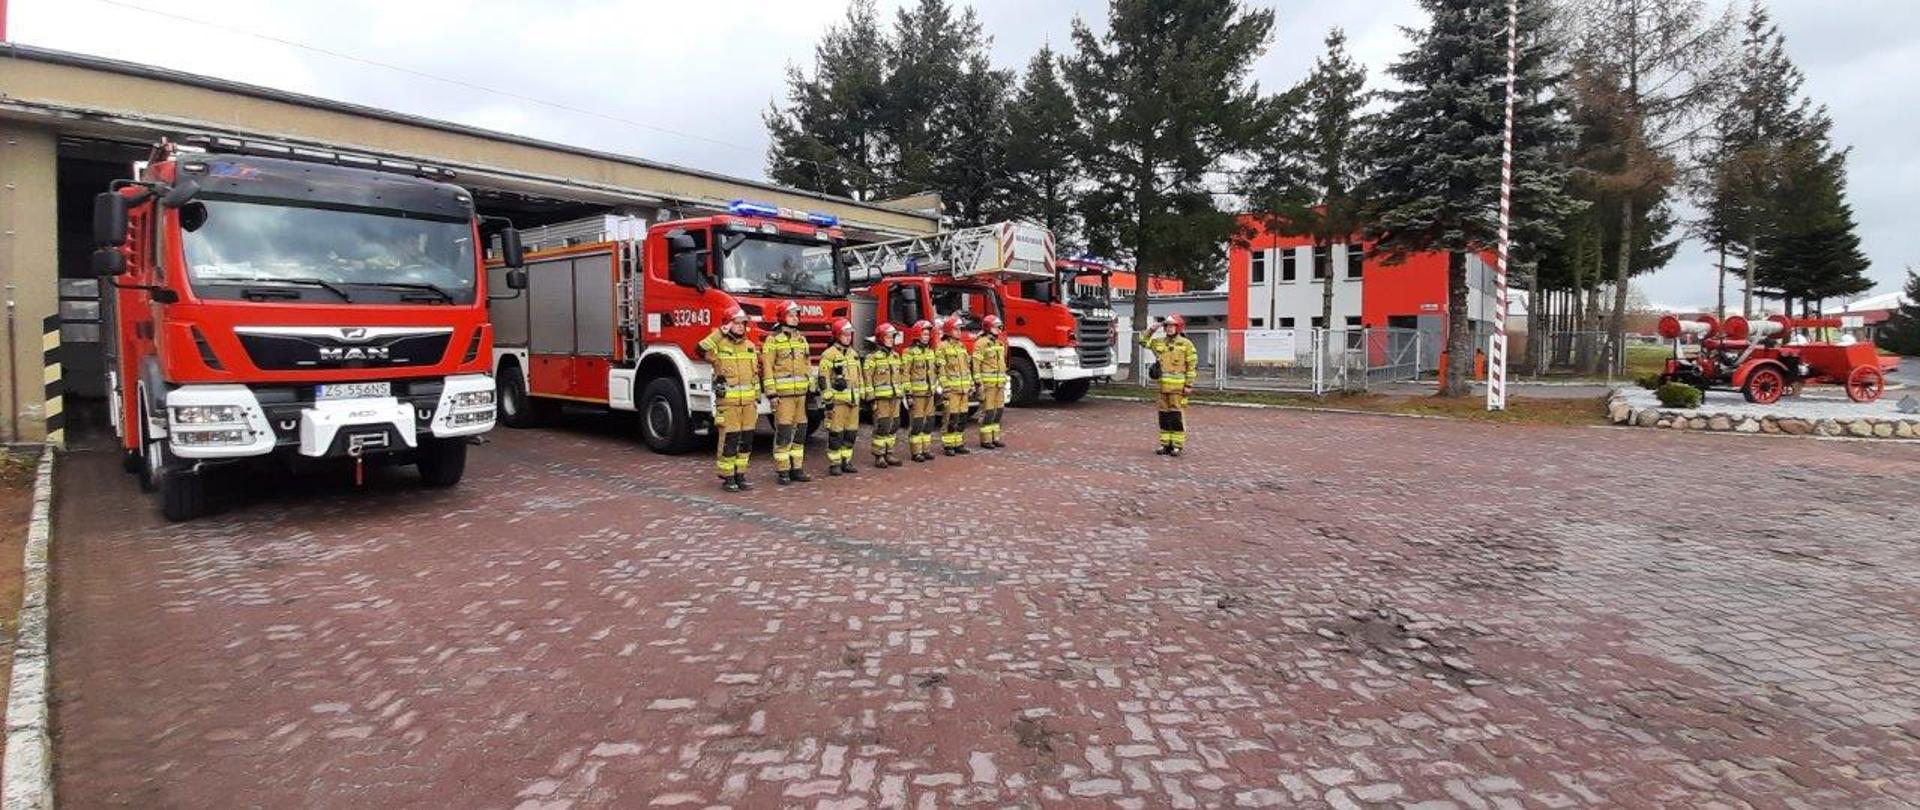 Uczczenie 12 rocznicy katastrofy Smoleńskiej. Strażacy JRG-2 Koszalin